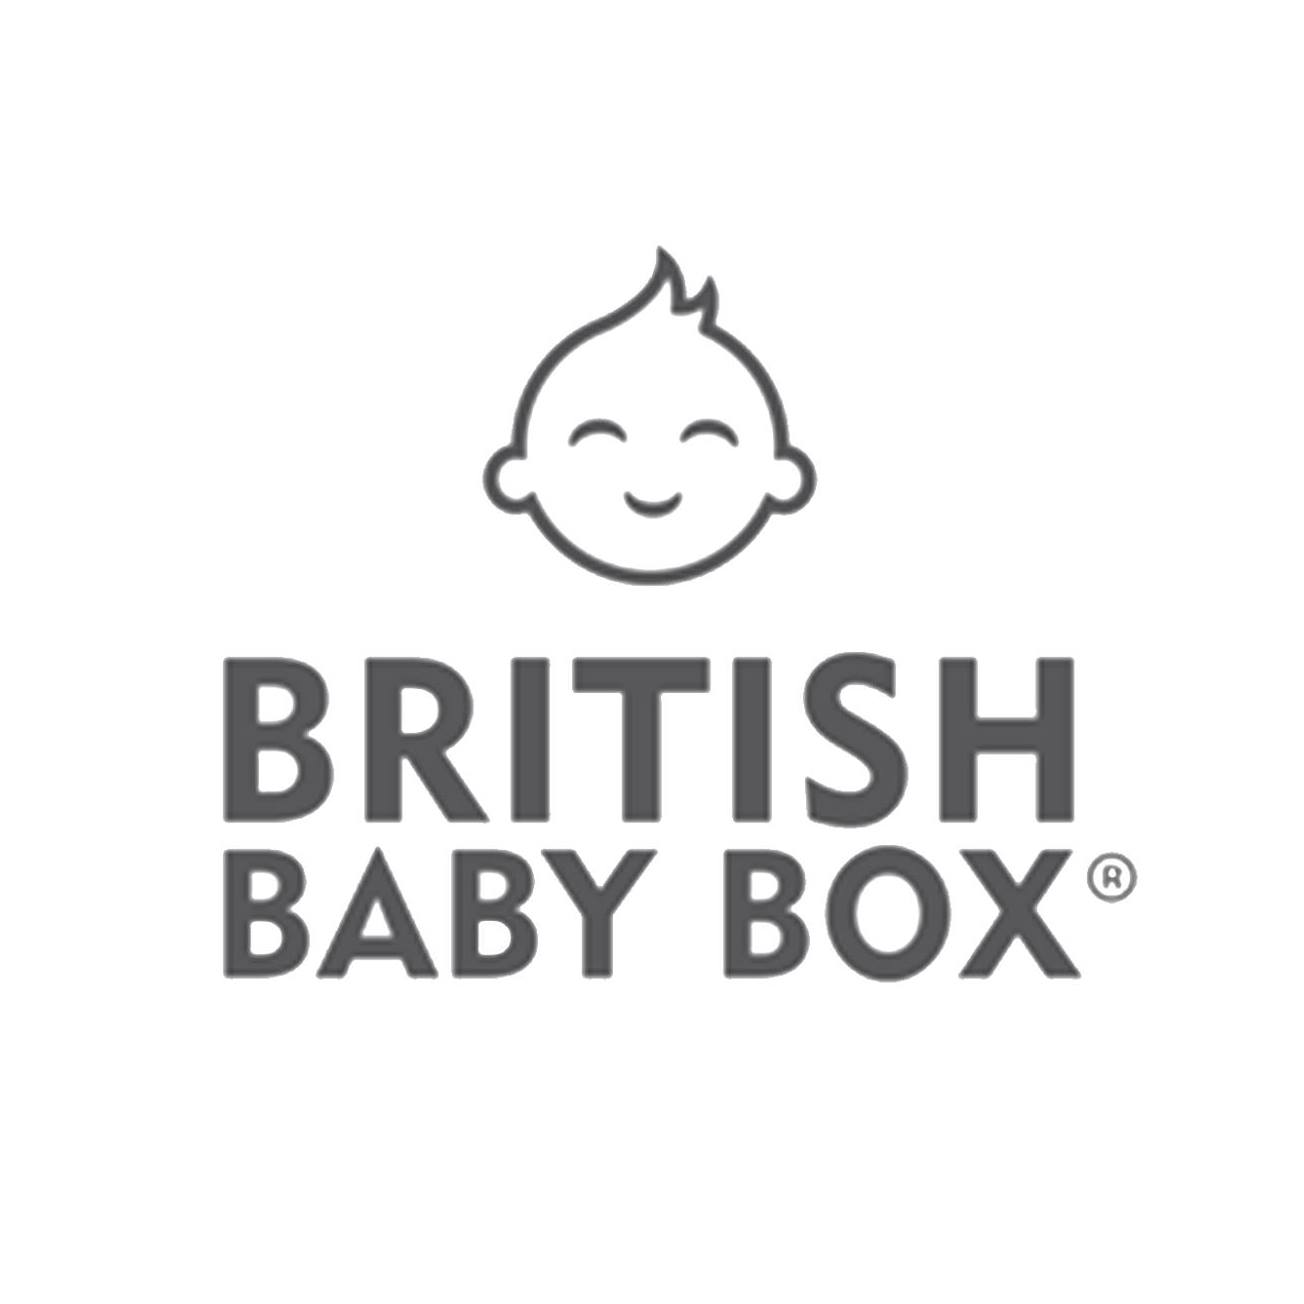 EXHIBITOR: British Baby Box